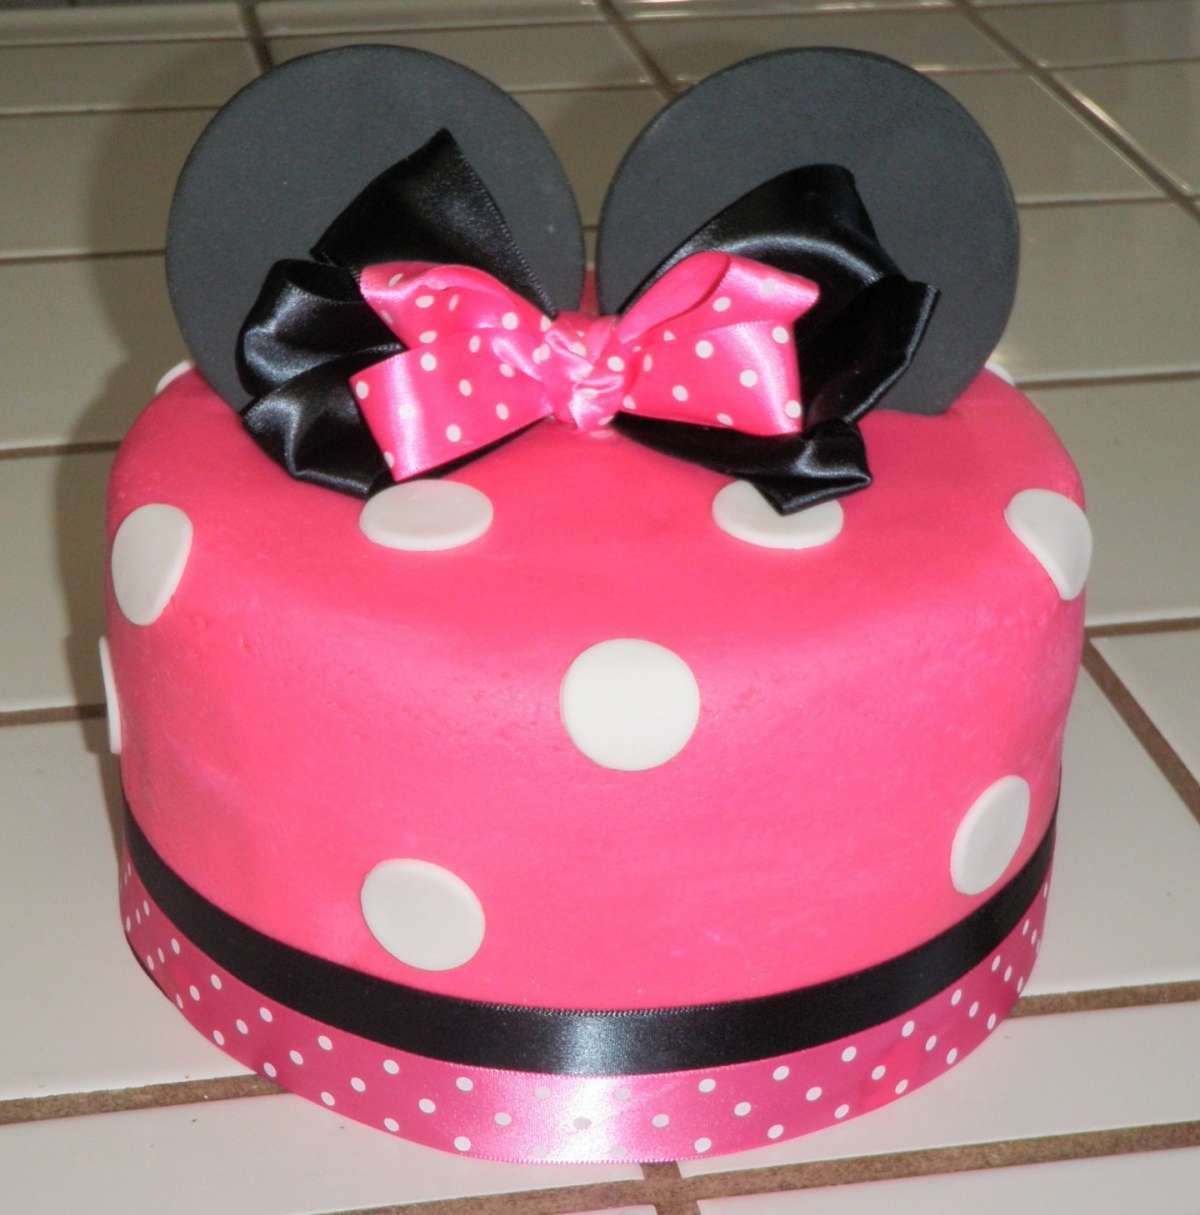 Torta Minnie Mouse